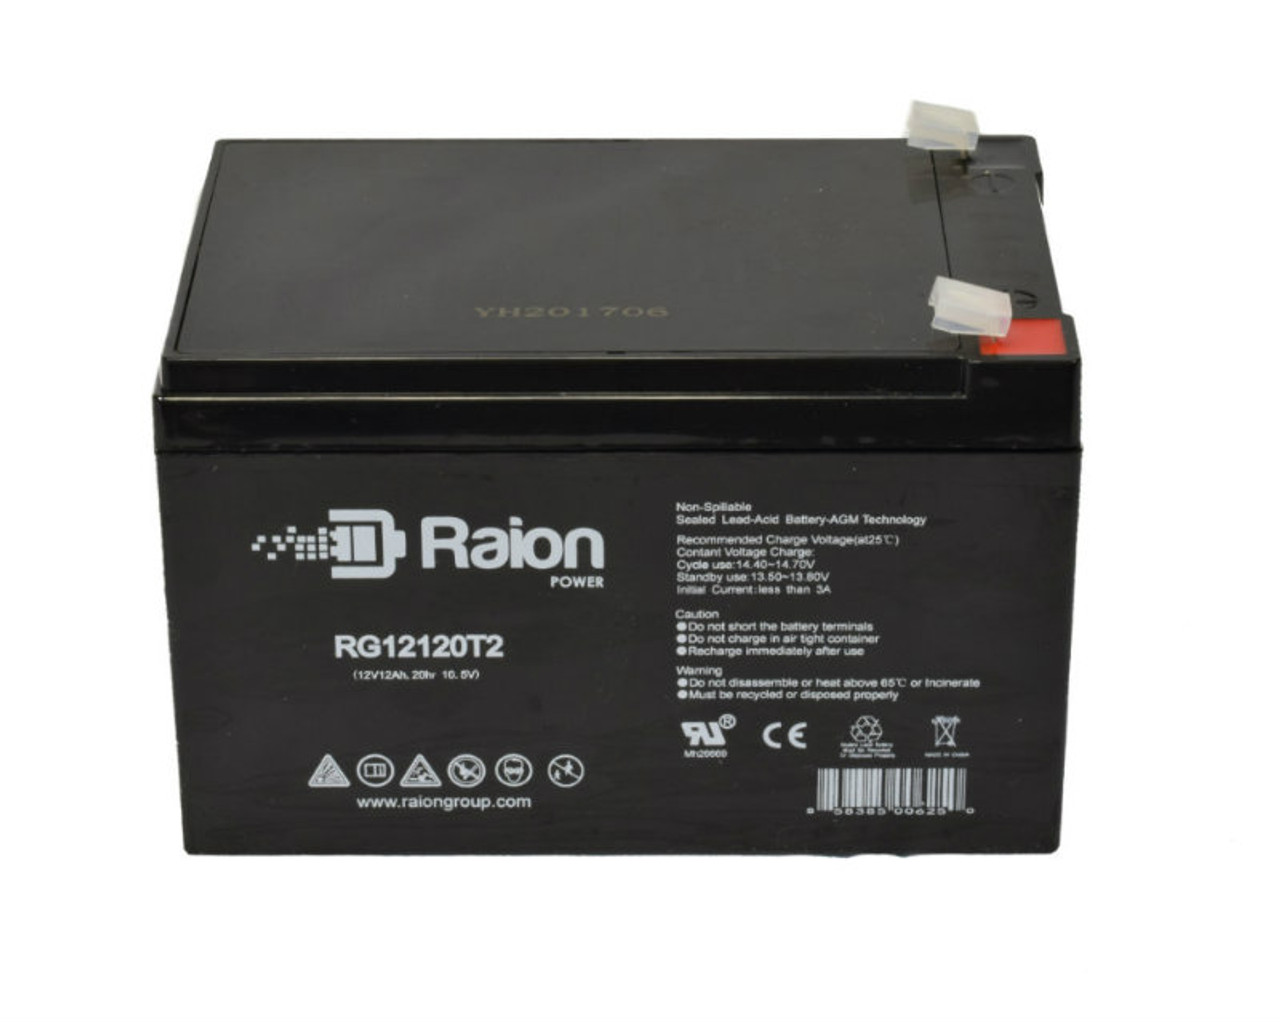 Raion Power RG12120T2 SLA Battery for Motoma MS12V14